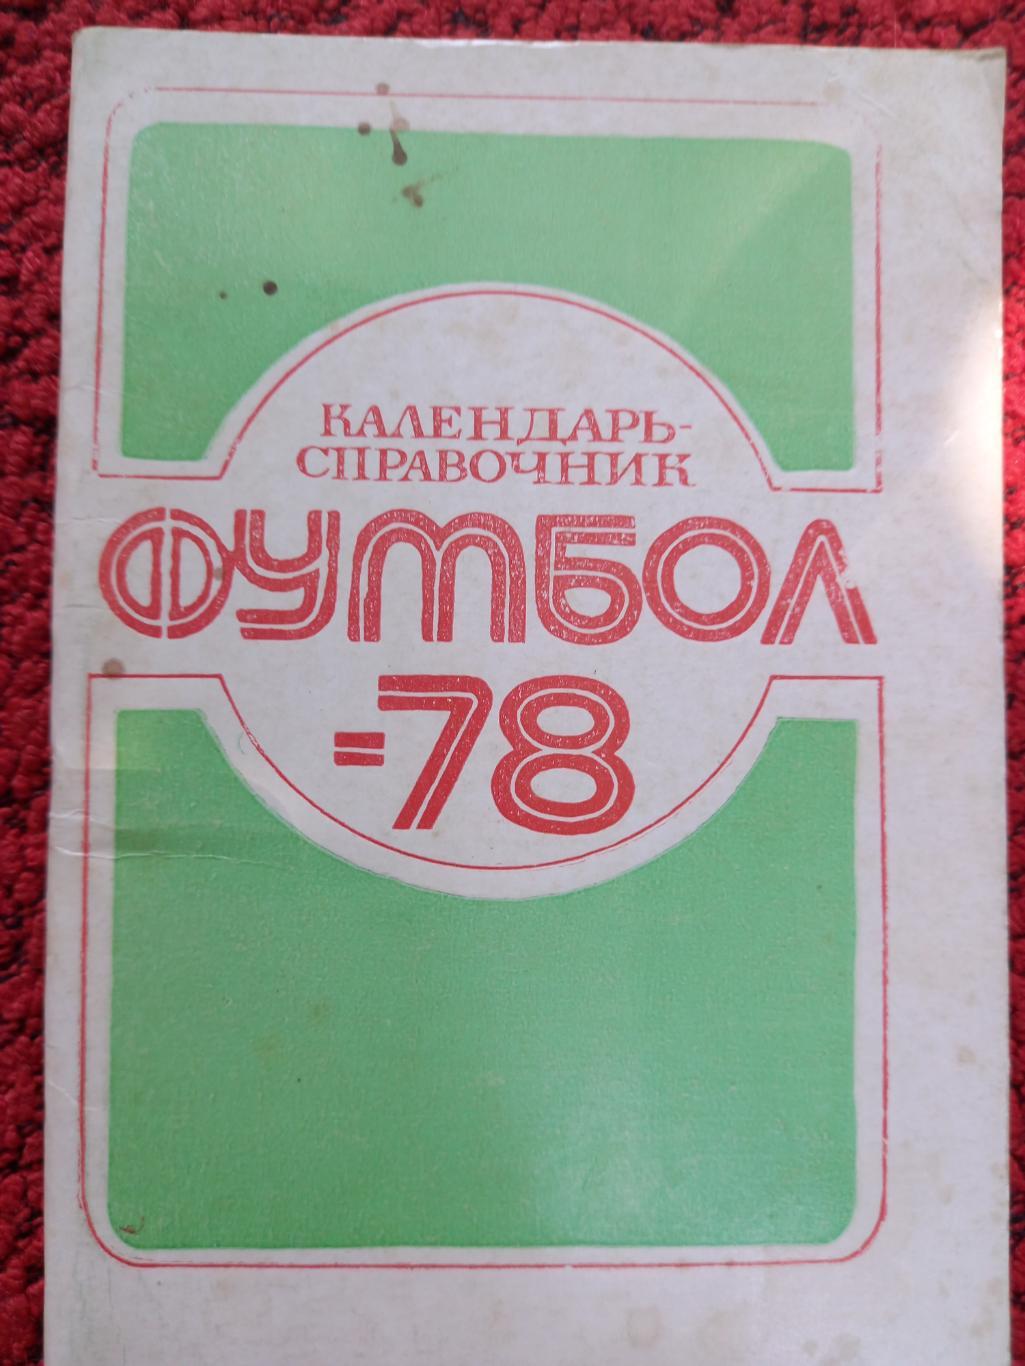 Календарь - справочник Нальчик 1978г.